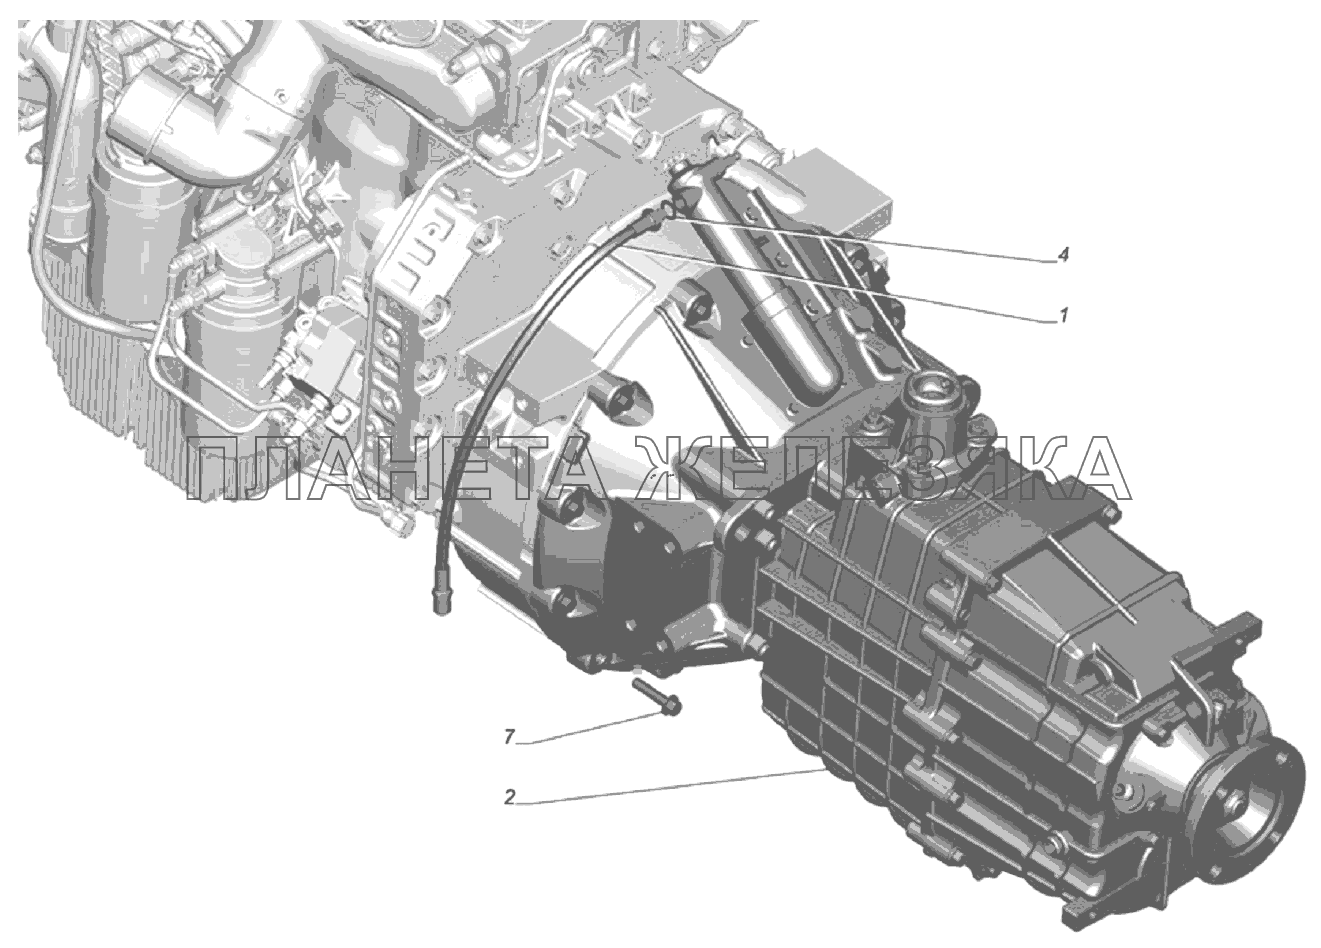 Установка коробки передач на двигатель 33106-1700007 ГАЗ-33106 Евро 3